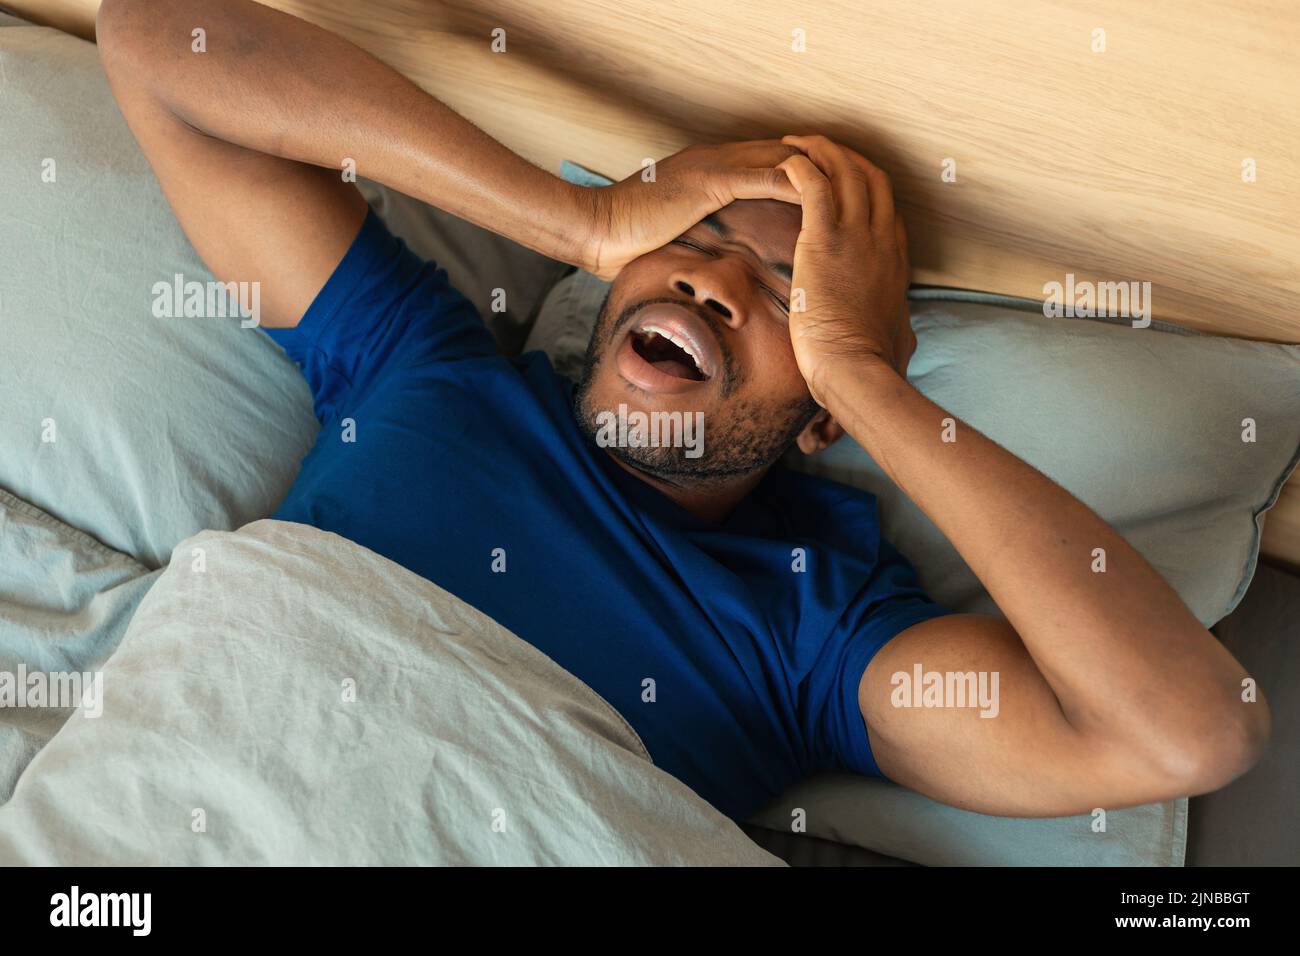 El hombre negro despierta bostezando y frotando los ojos acostado en el dormitorio Foto de stock